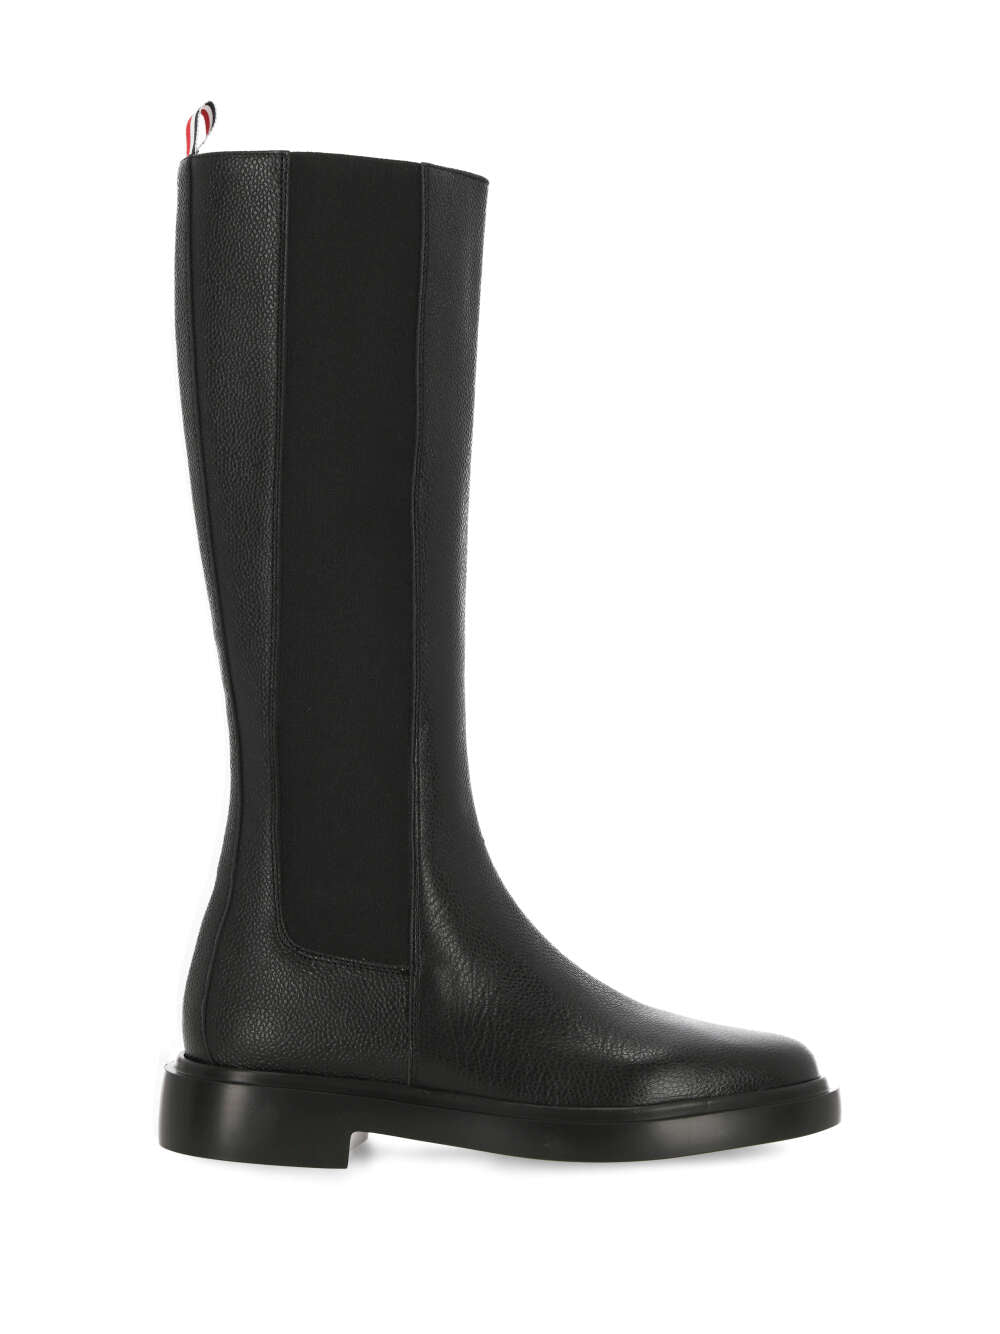 Thom Browne FFB138A Woman Black Boots - Zuklat